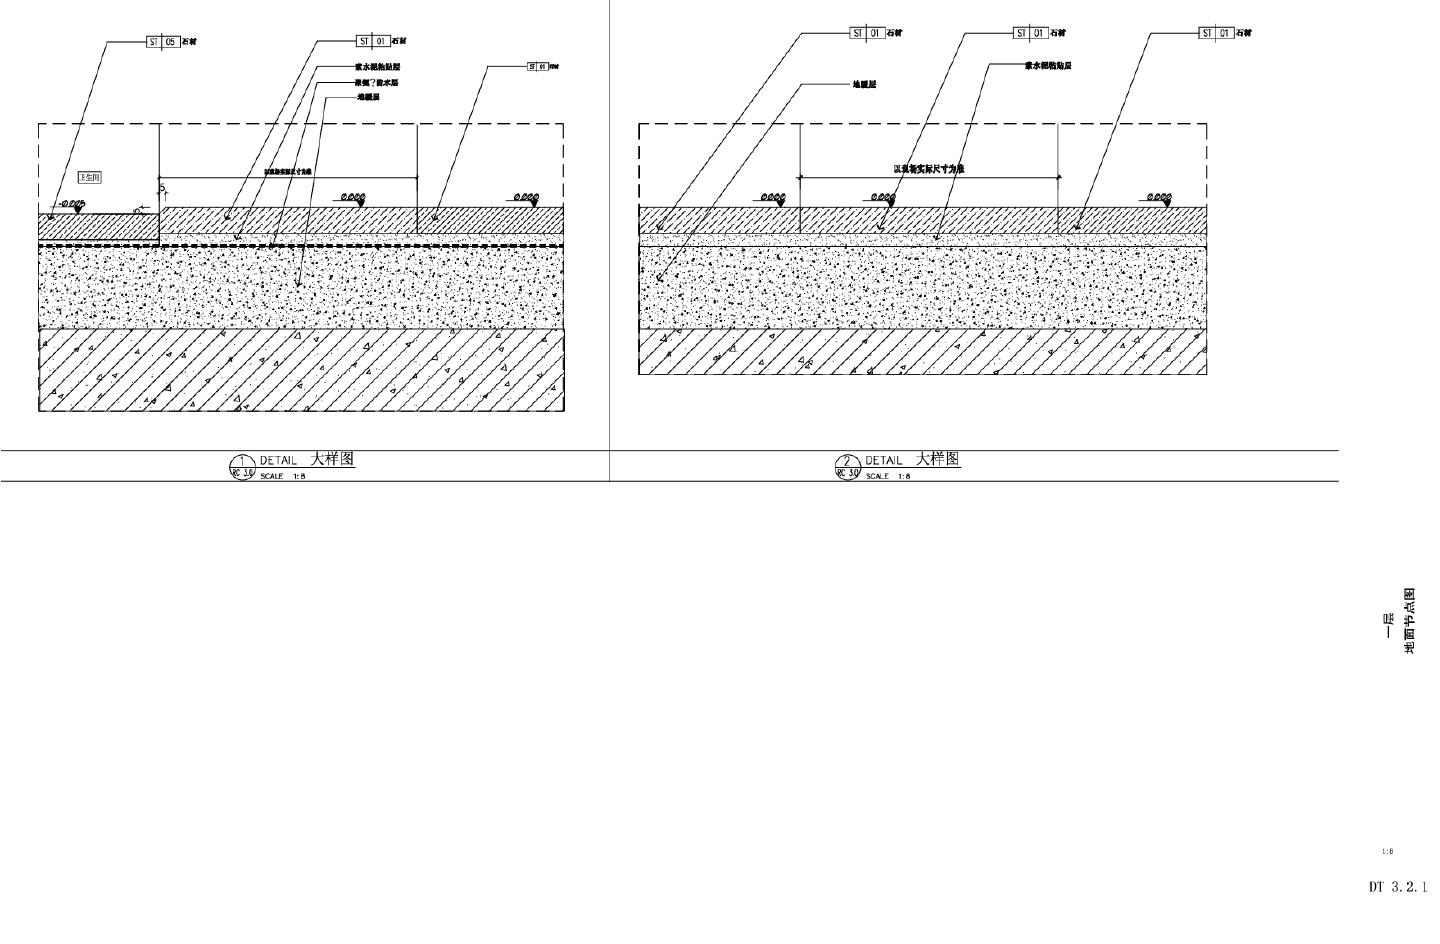 恒大丽宫03-1 1F层天花-地面-墙面节点CAD图.dwg